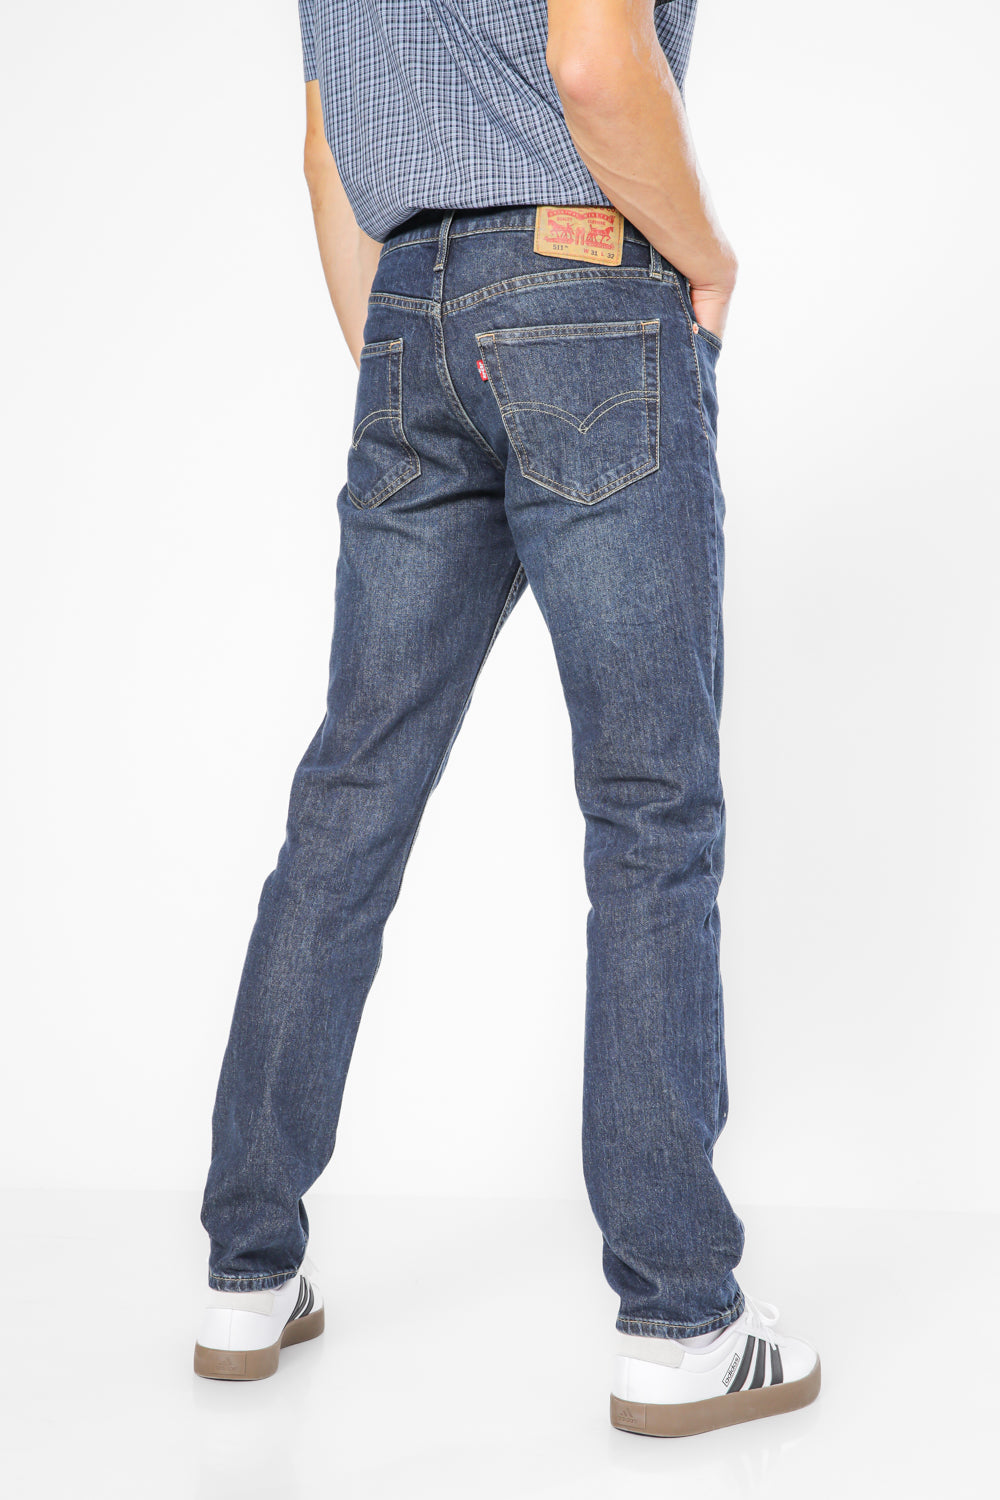 ג'ינס 511 Slim בצבע כחול כהה